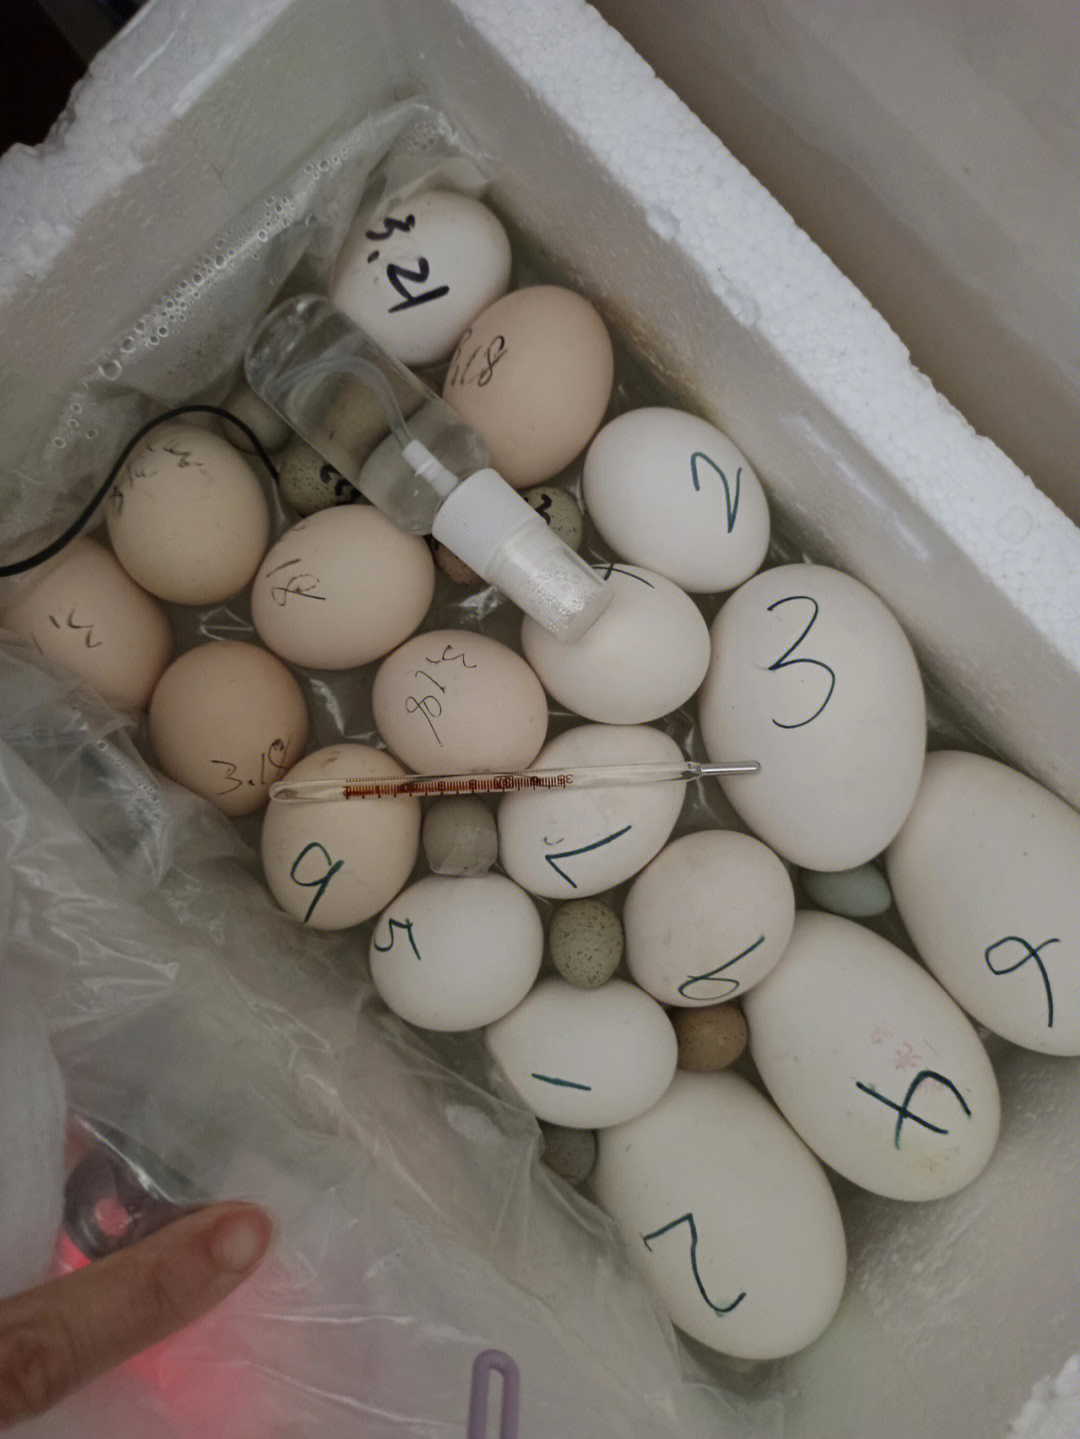 本来想着等孵化箱里出来再继续孵的,但是婆婆让我下批孵鸭蛋,所以就